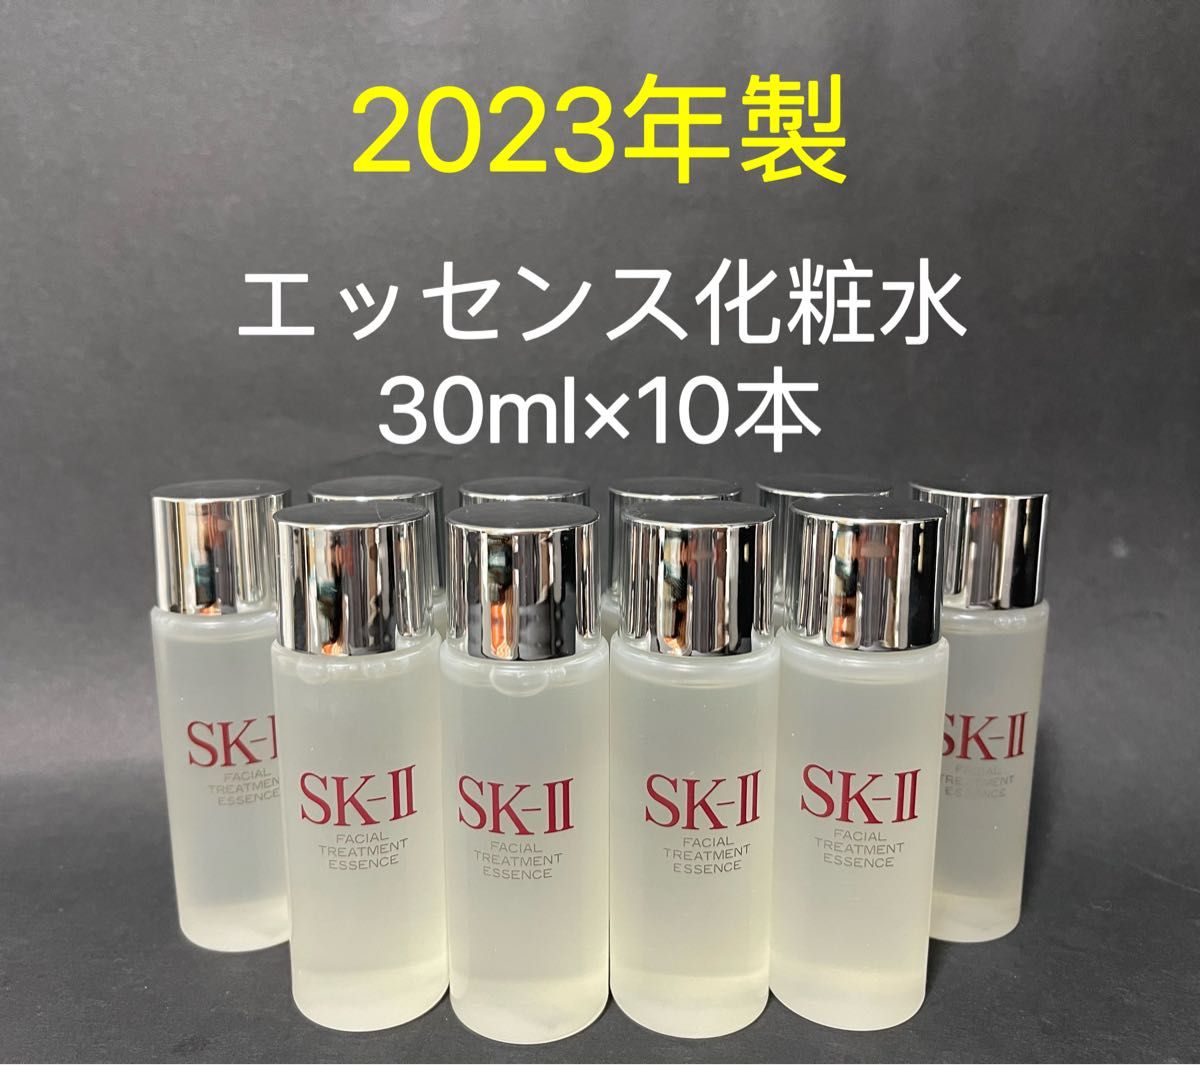 SK-II 購入時期 2023年6月 #洗顔料20g#一般肌用化粧水75ml#美容